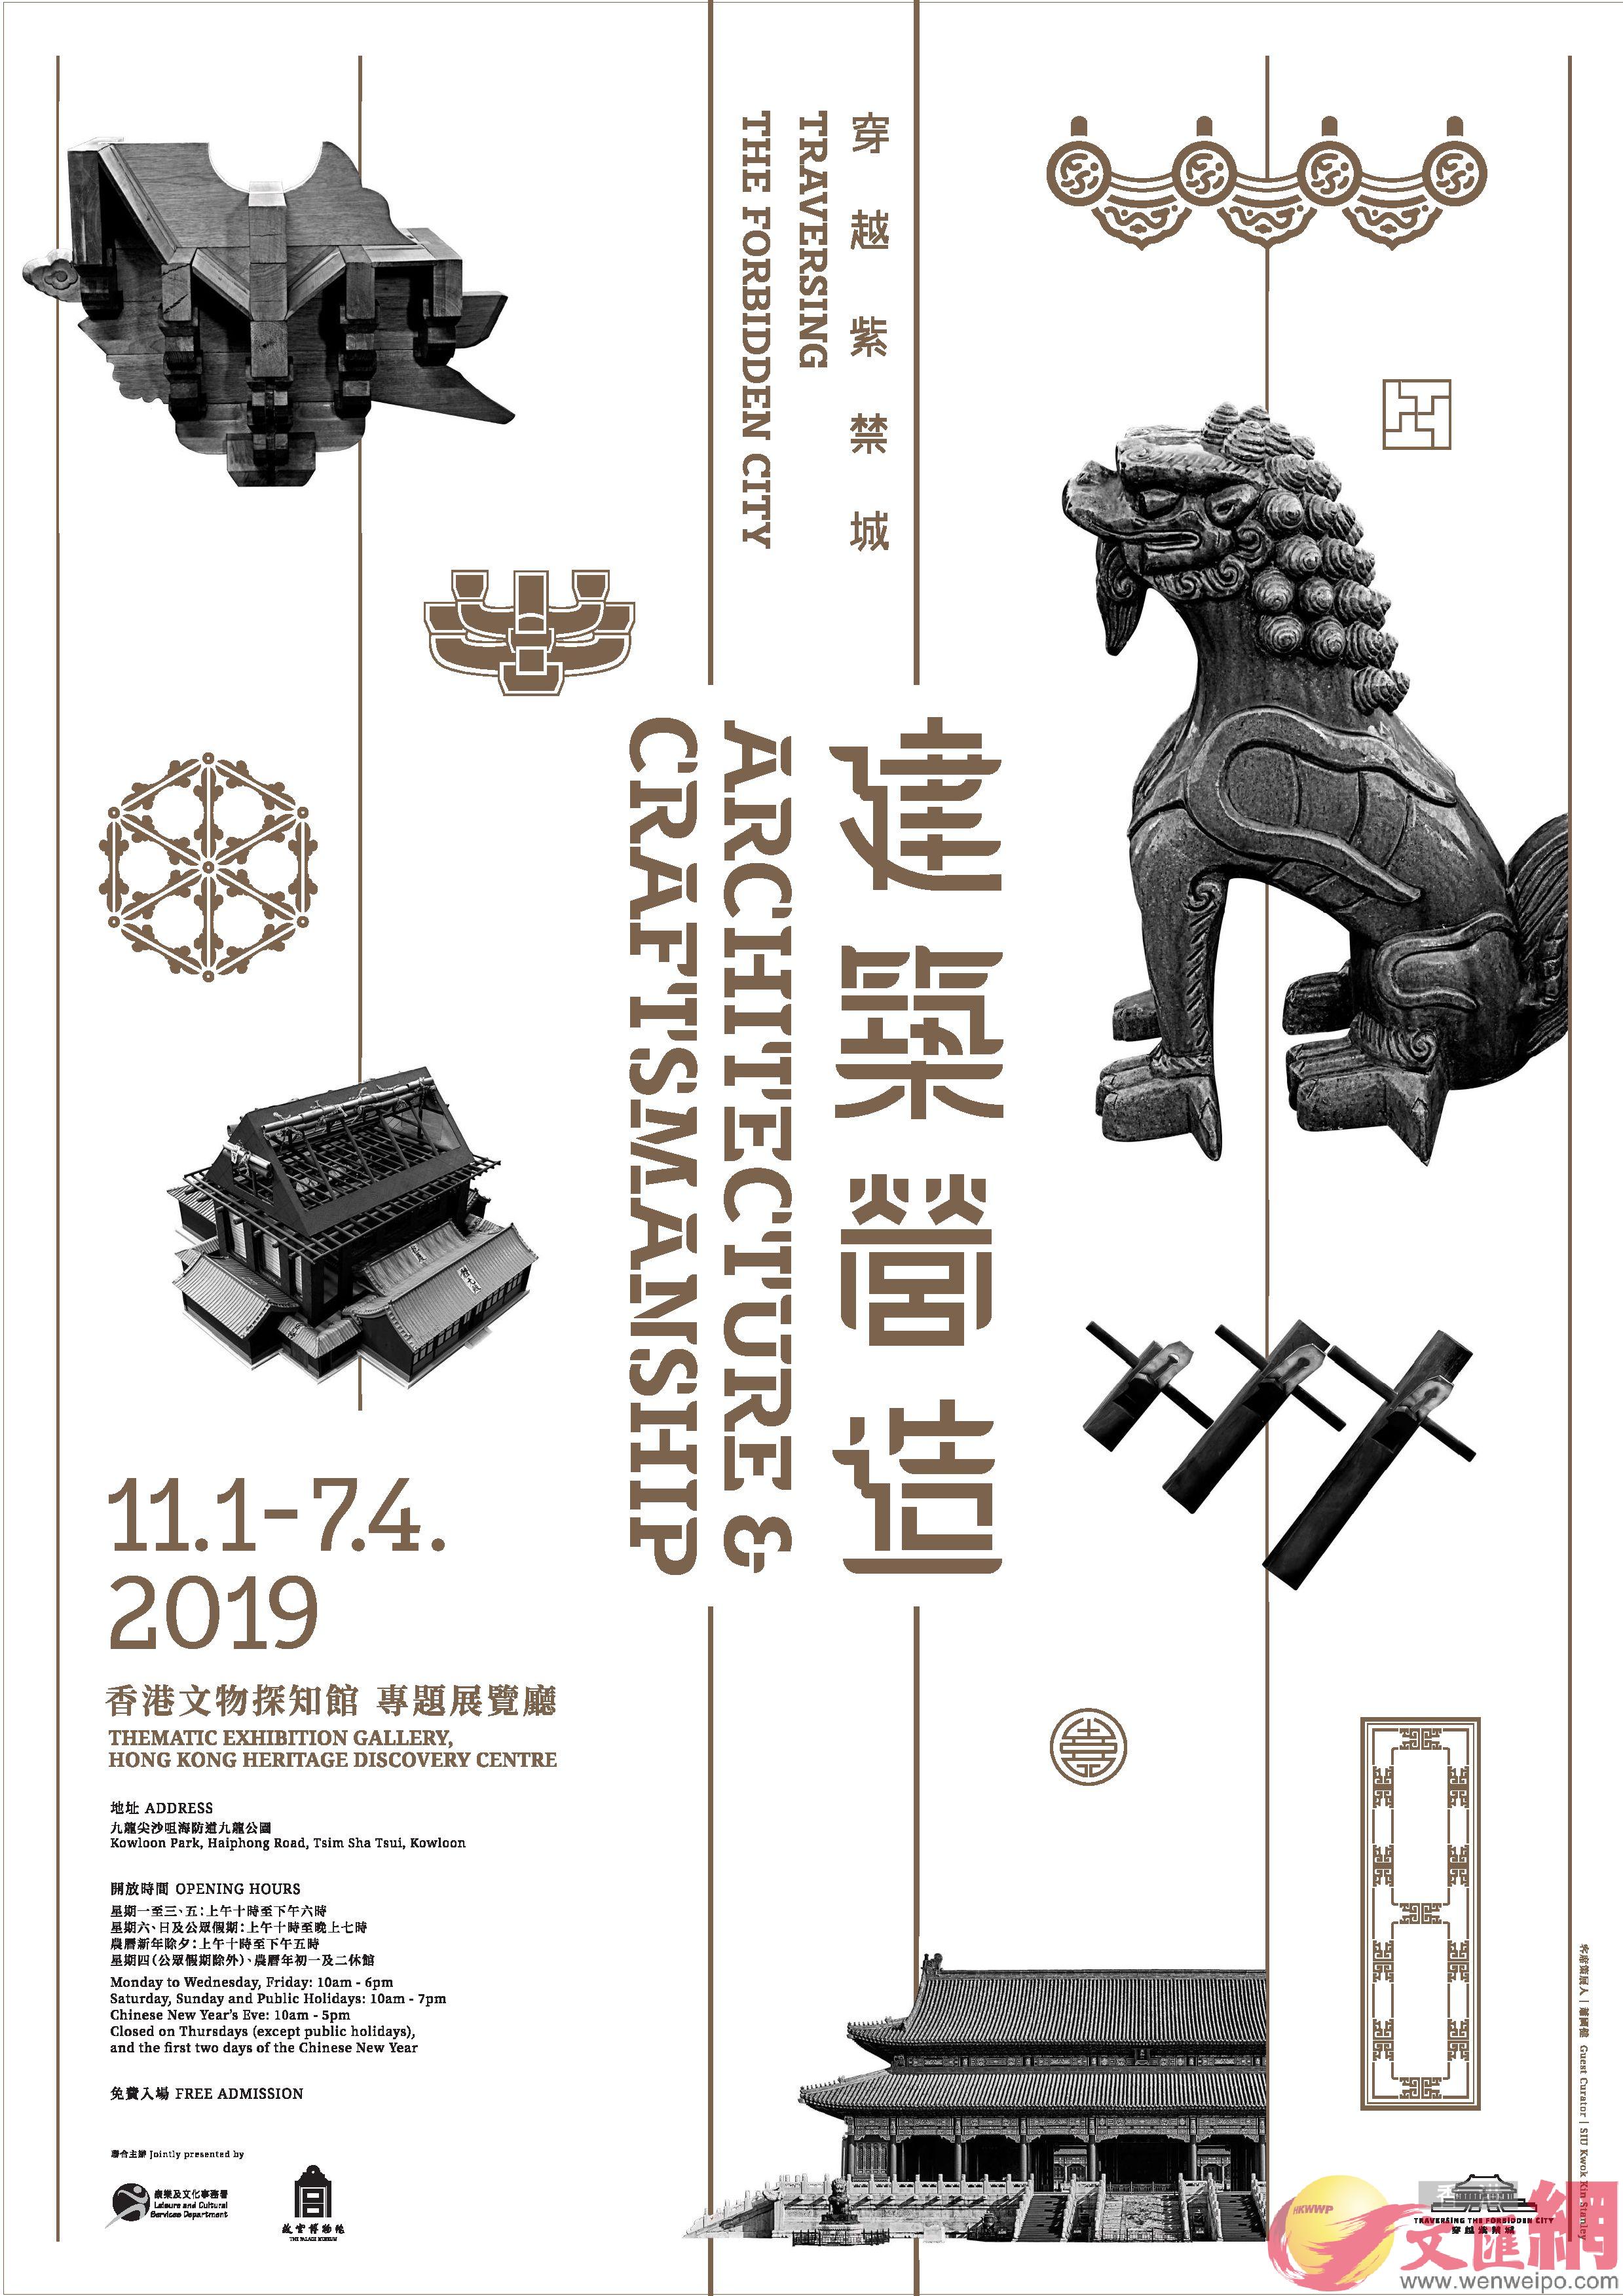 紫禁城建築工藝展覽明香港文物探知館開幕C(展覽官網圖片)